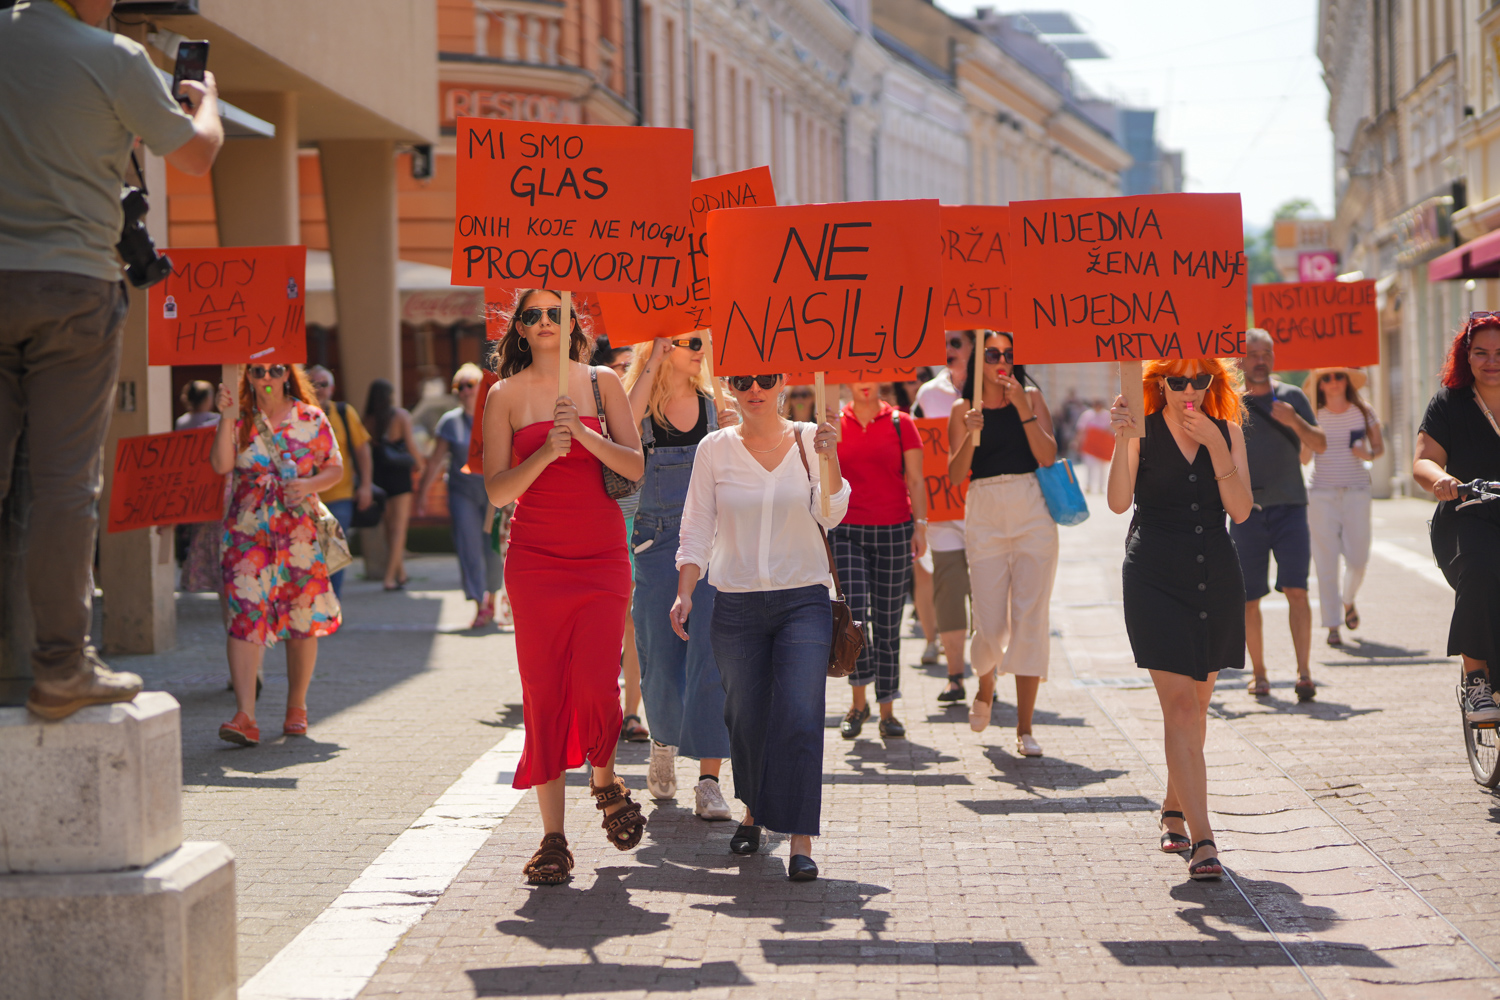 “DRŽAVO POKAŽI DA NISMO SAME” Protest u Banjaluci protiv učestalog femicida u BiH (FOTO)